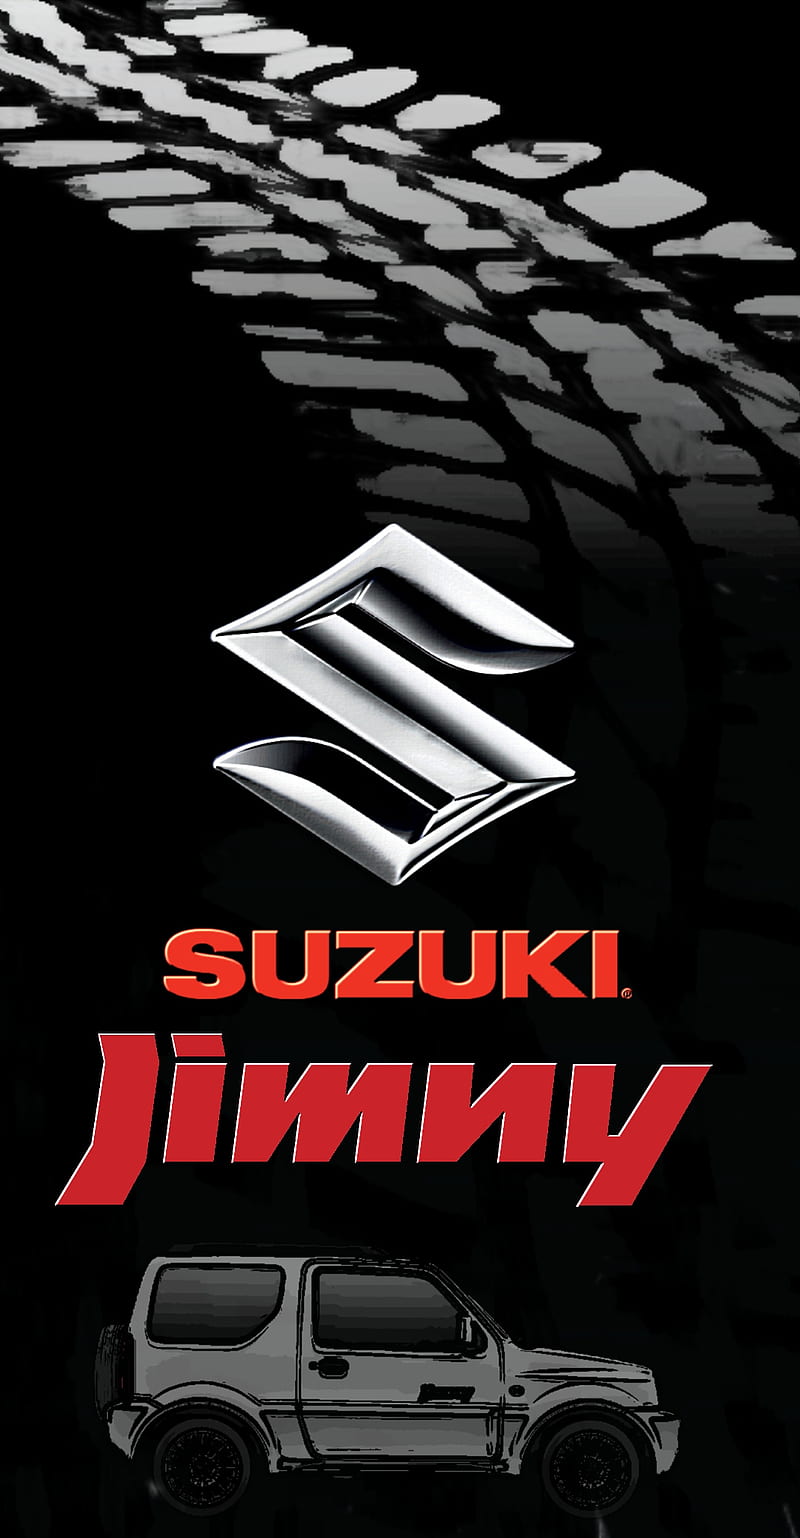 Suzuki Jimny 4x4 Jimmy Offroad Truck Hd Phone Wallpaper Peakpx